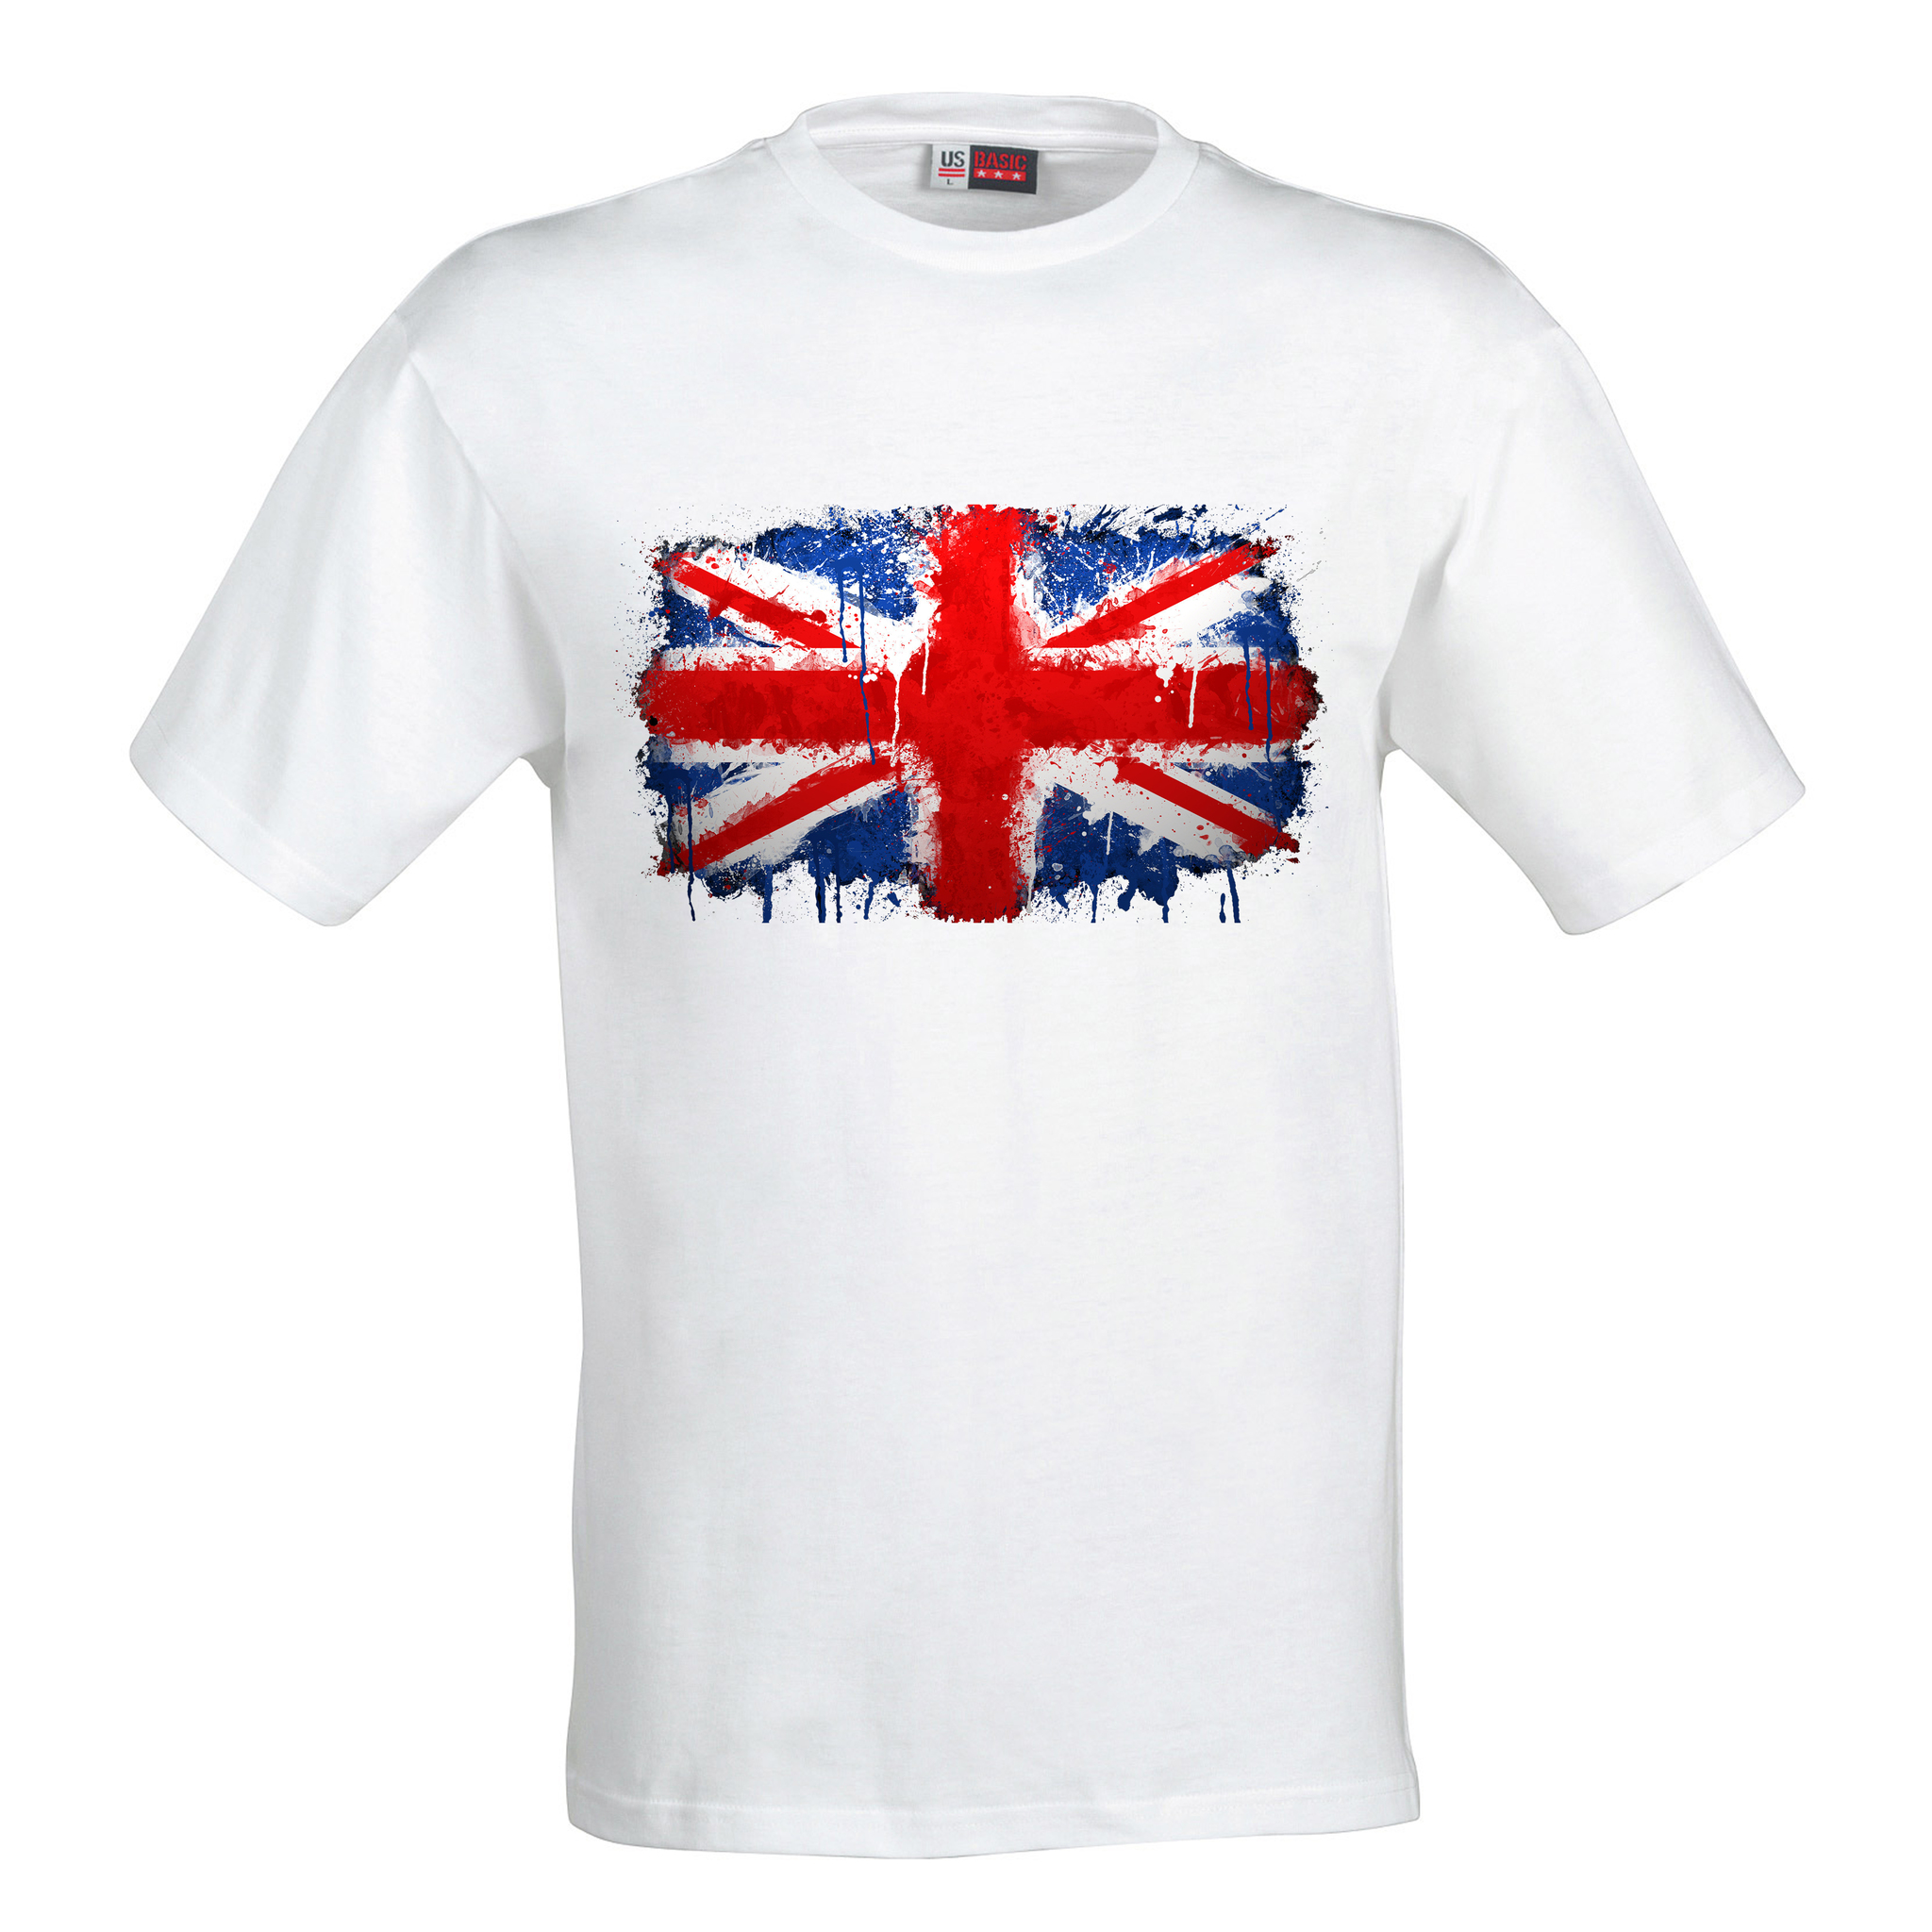 Сувенирные футболки. Сувенирная майка. Футболки а британской символикой. Футболка Великобритания.